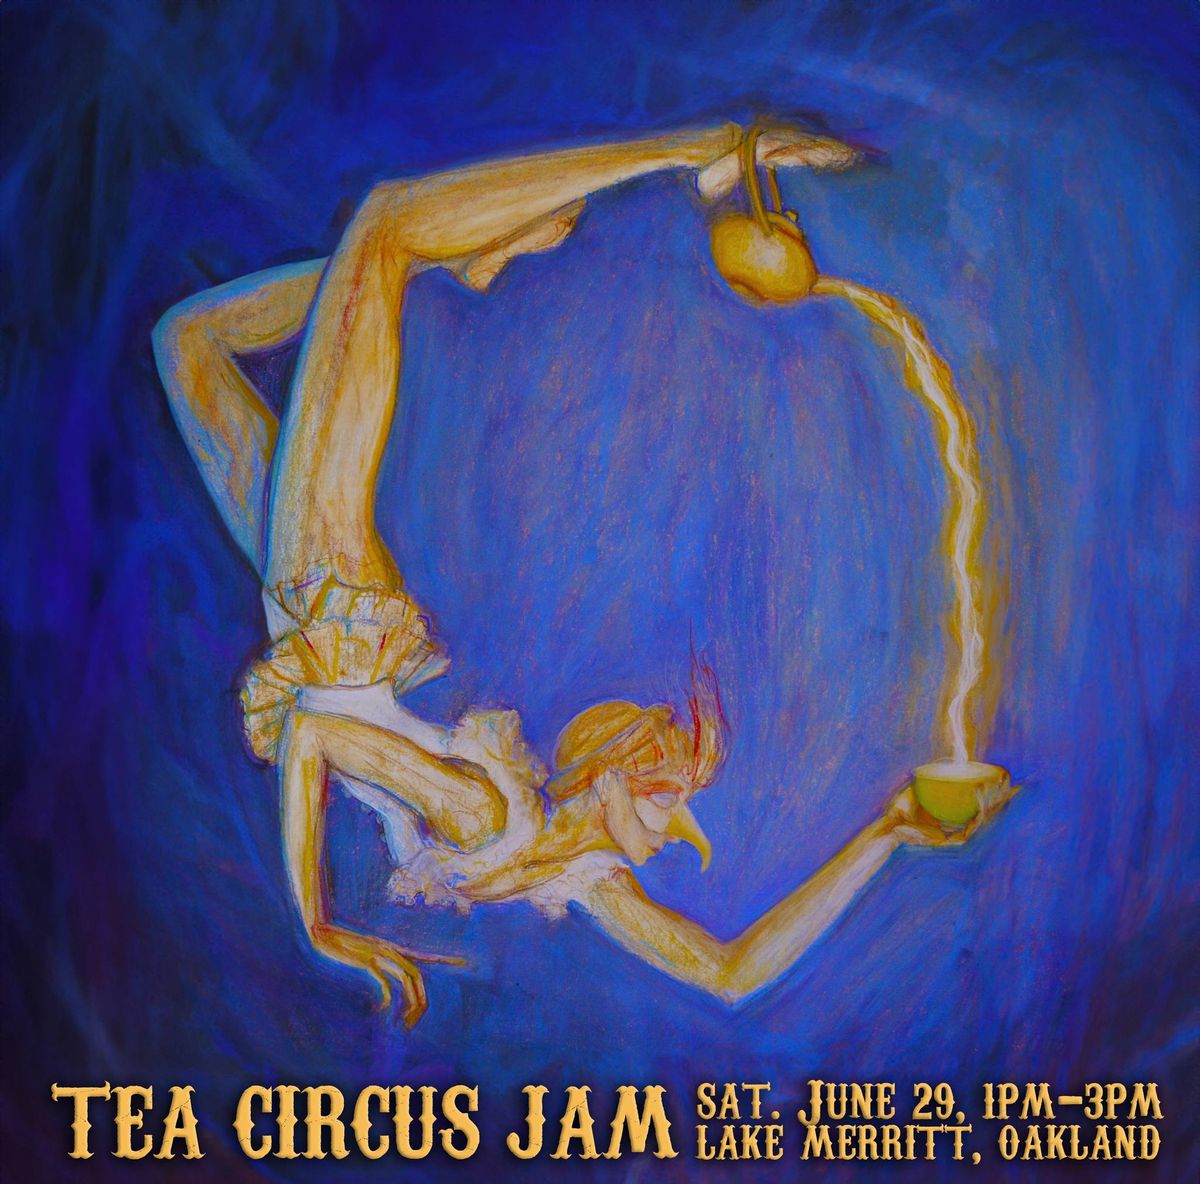 Tea Circus Jam at Lake Merritt